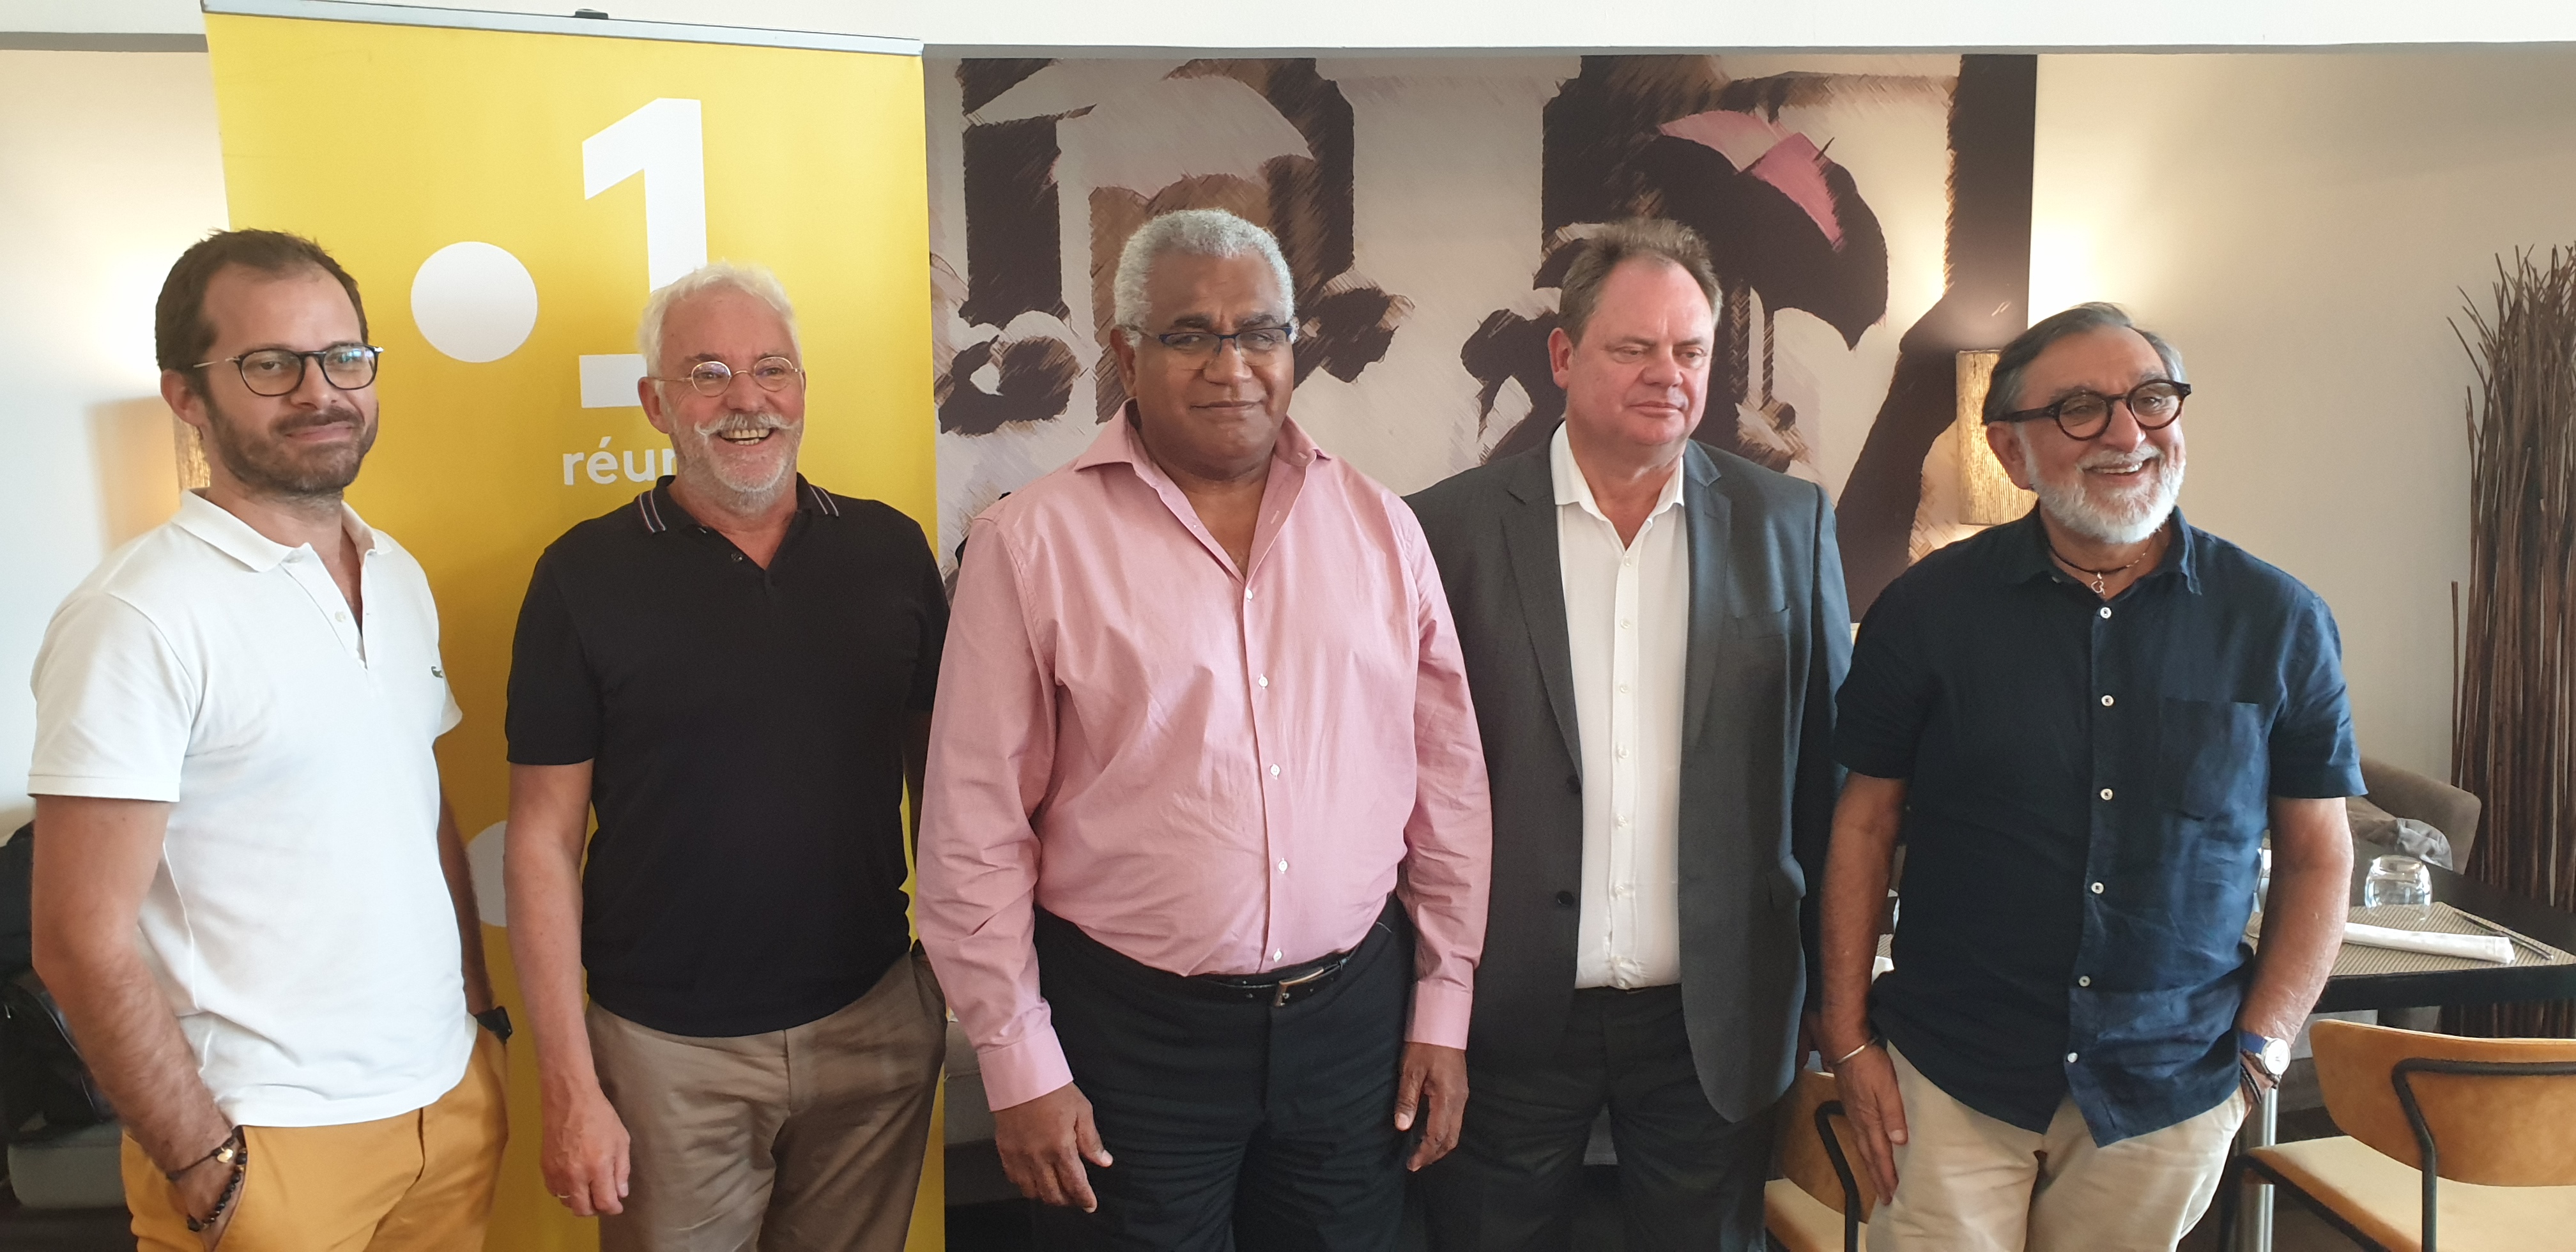 De gauche à droite : Guillaume Hoair, rédacteur en chef de Réunion 1ère, Alain Rodaix, Walles Kotra, Yannick Letranchant et Gora Patel